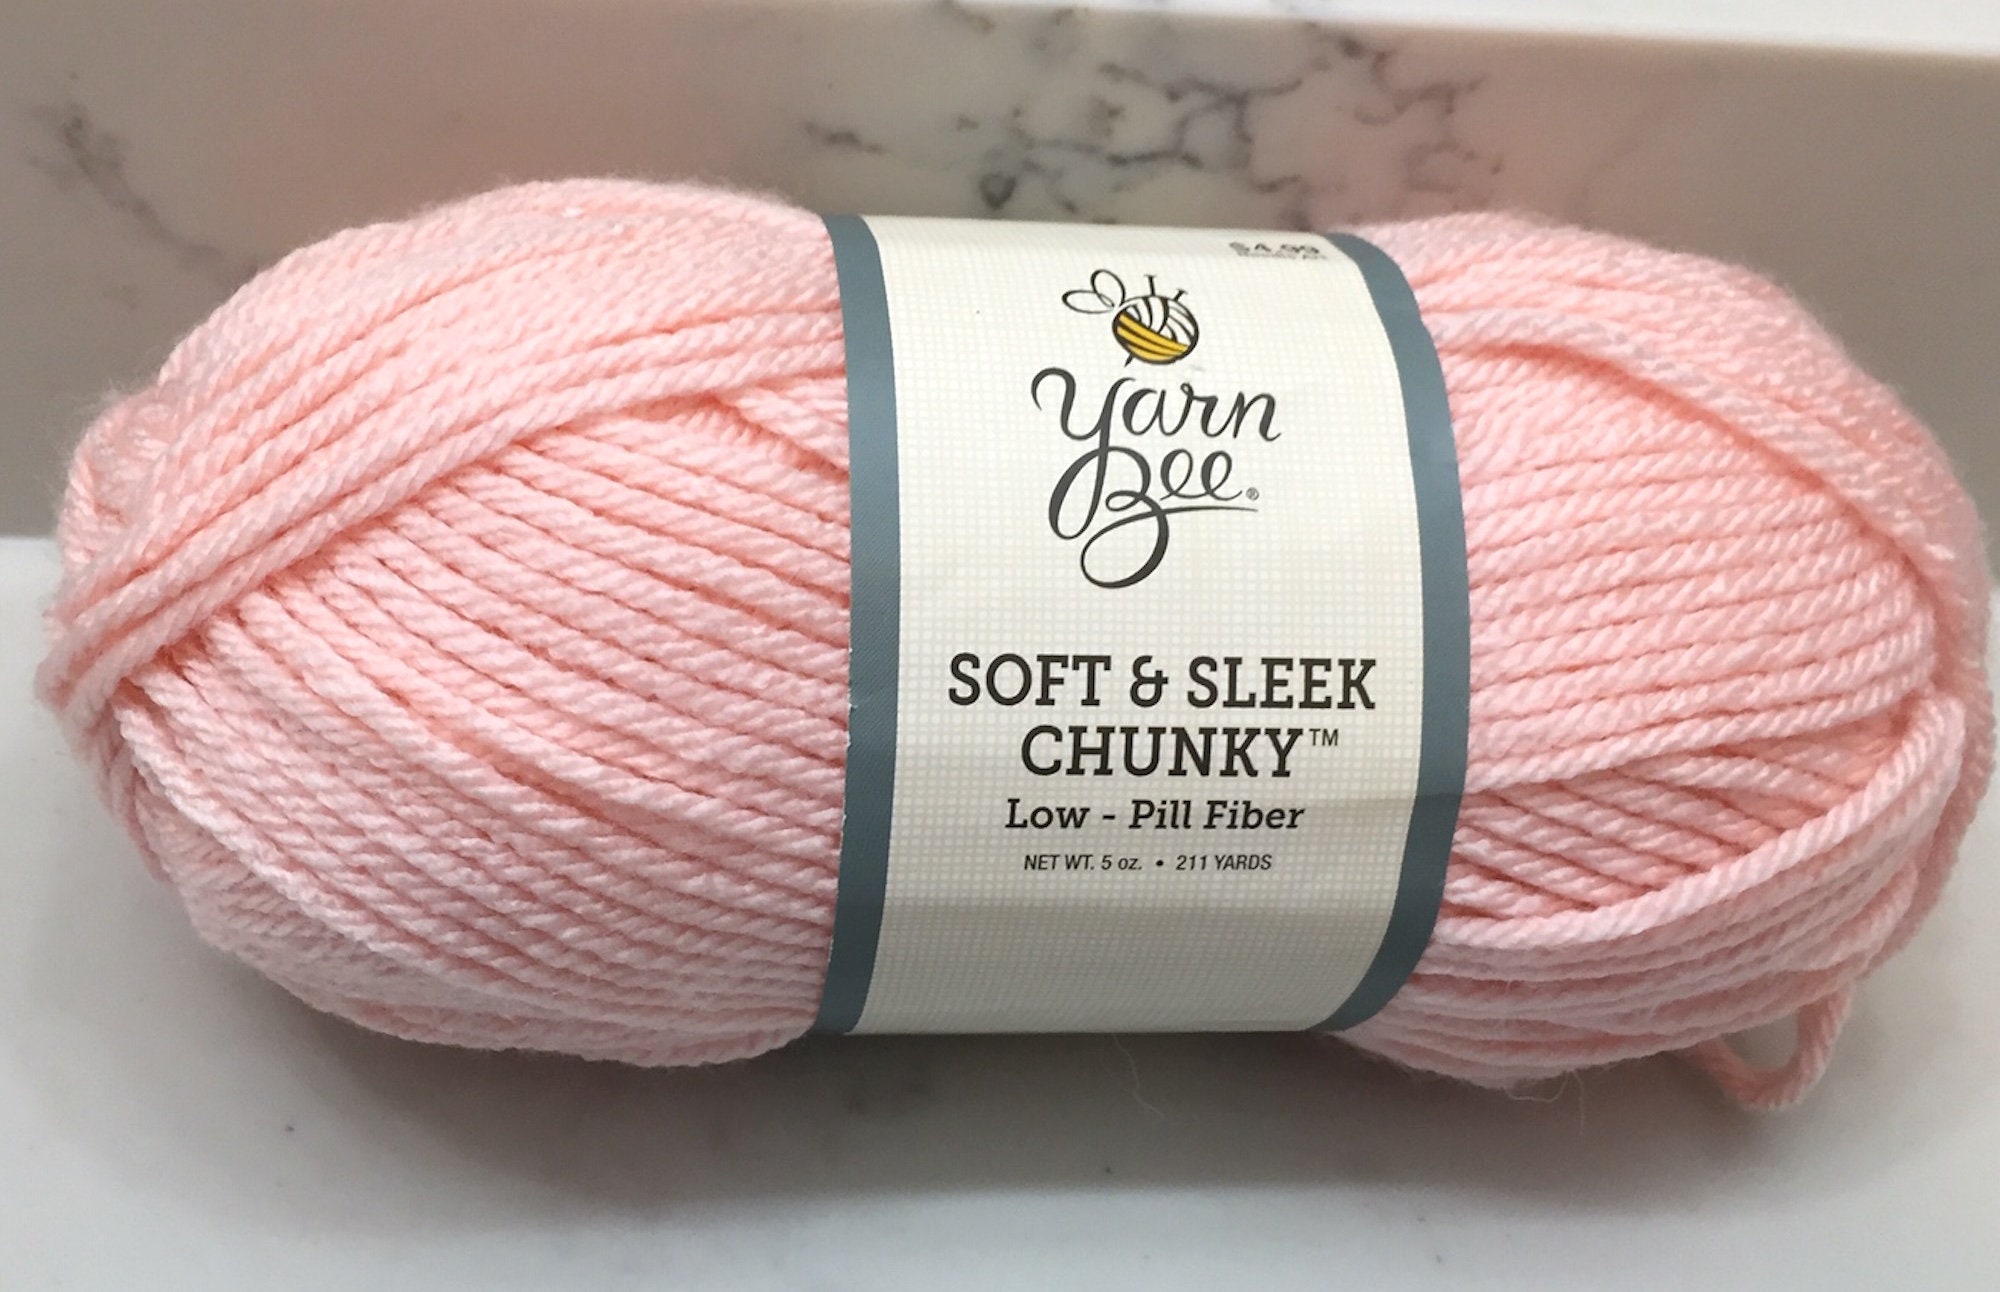 Yarn Bee Soft & Sleek Chunky Yarn